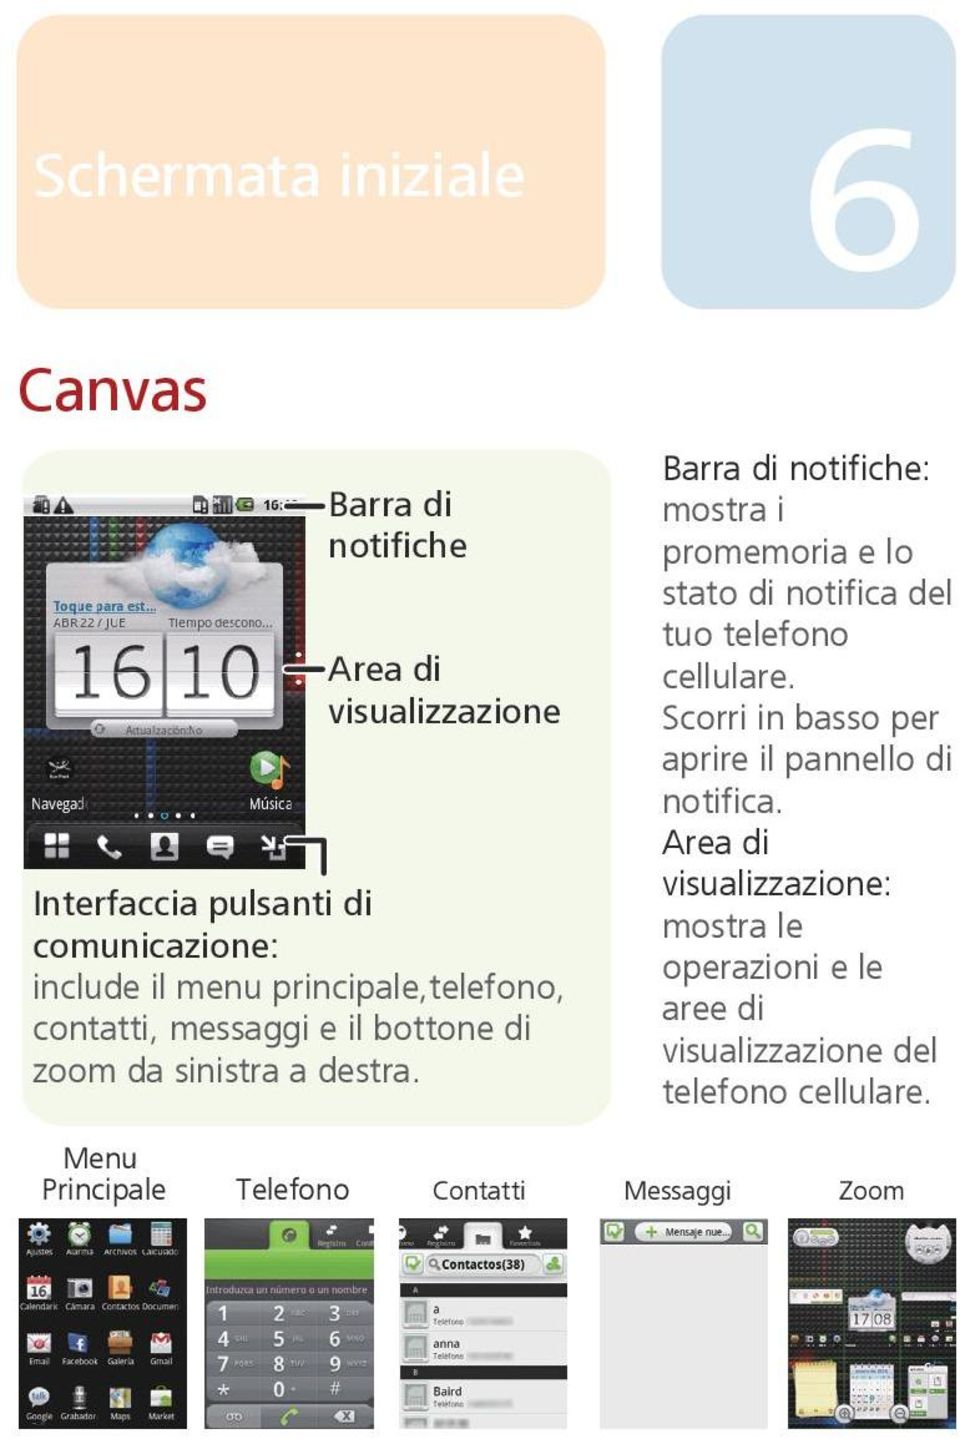 Menu Principale Telefono Contatti Barra di notifiche: mostra i promemoria e lo stato di notifica del tuo telefono cellulare.